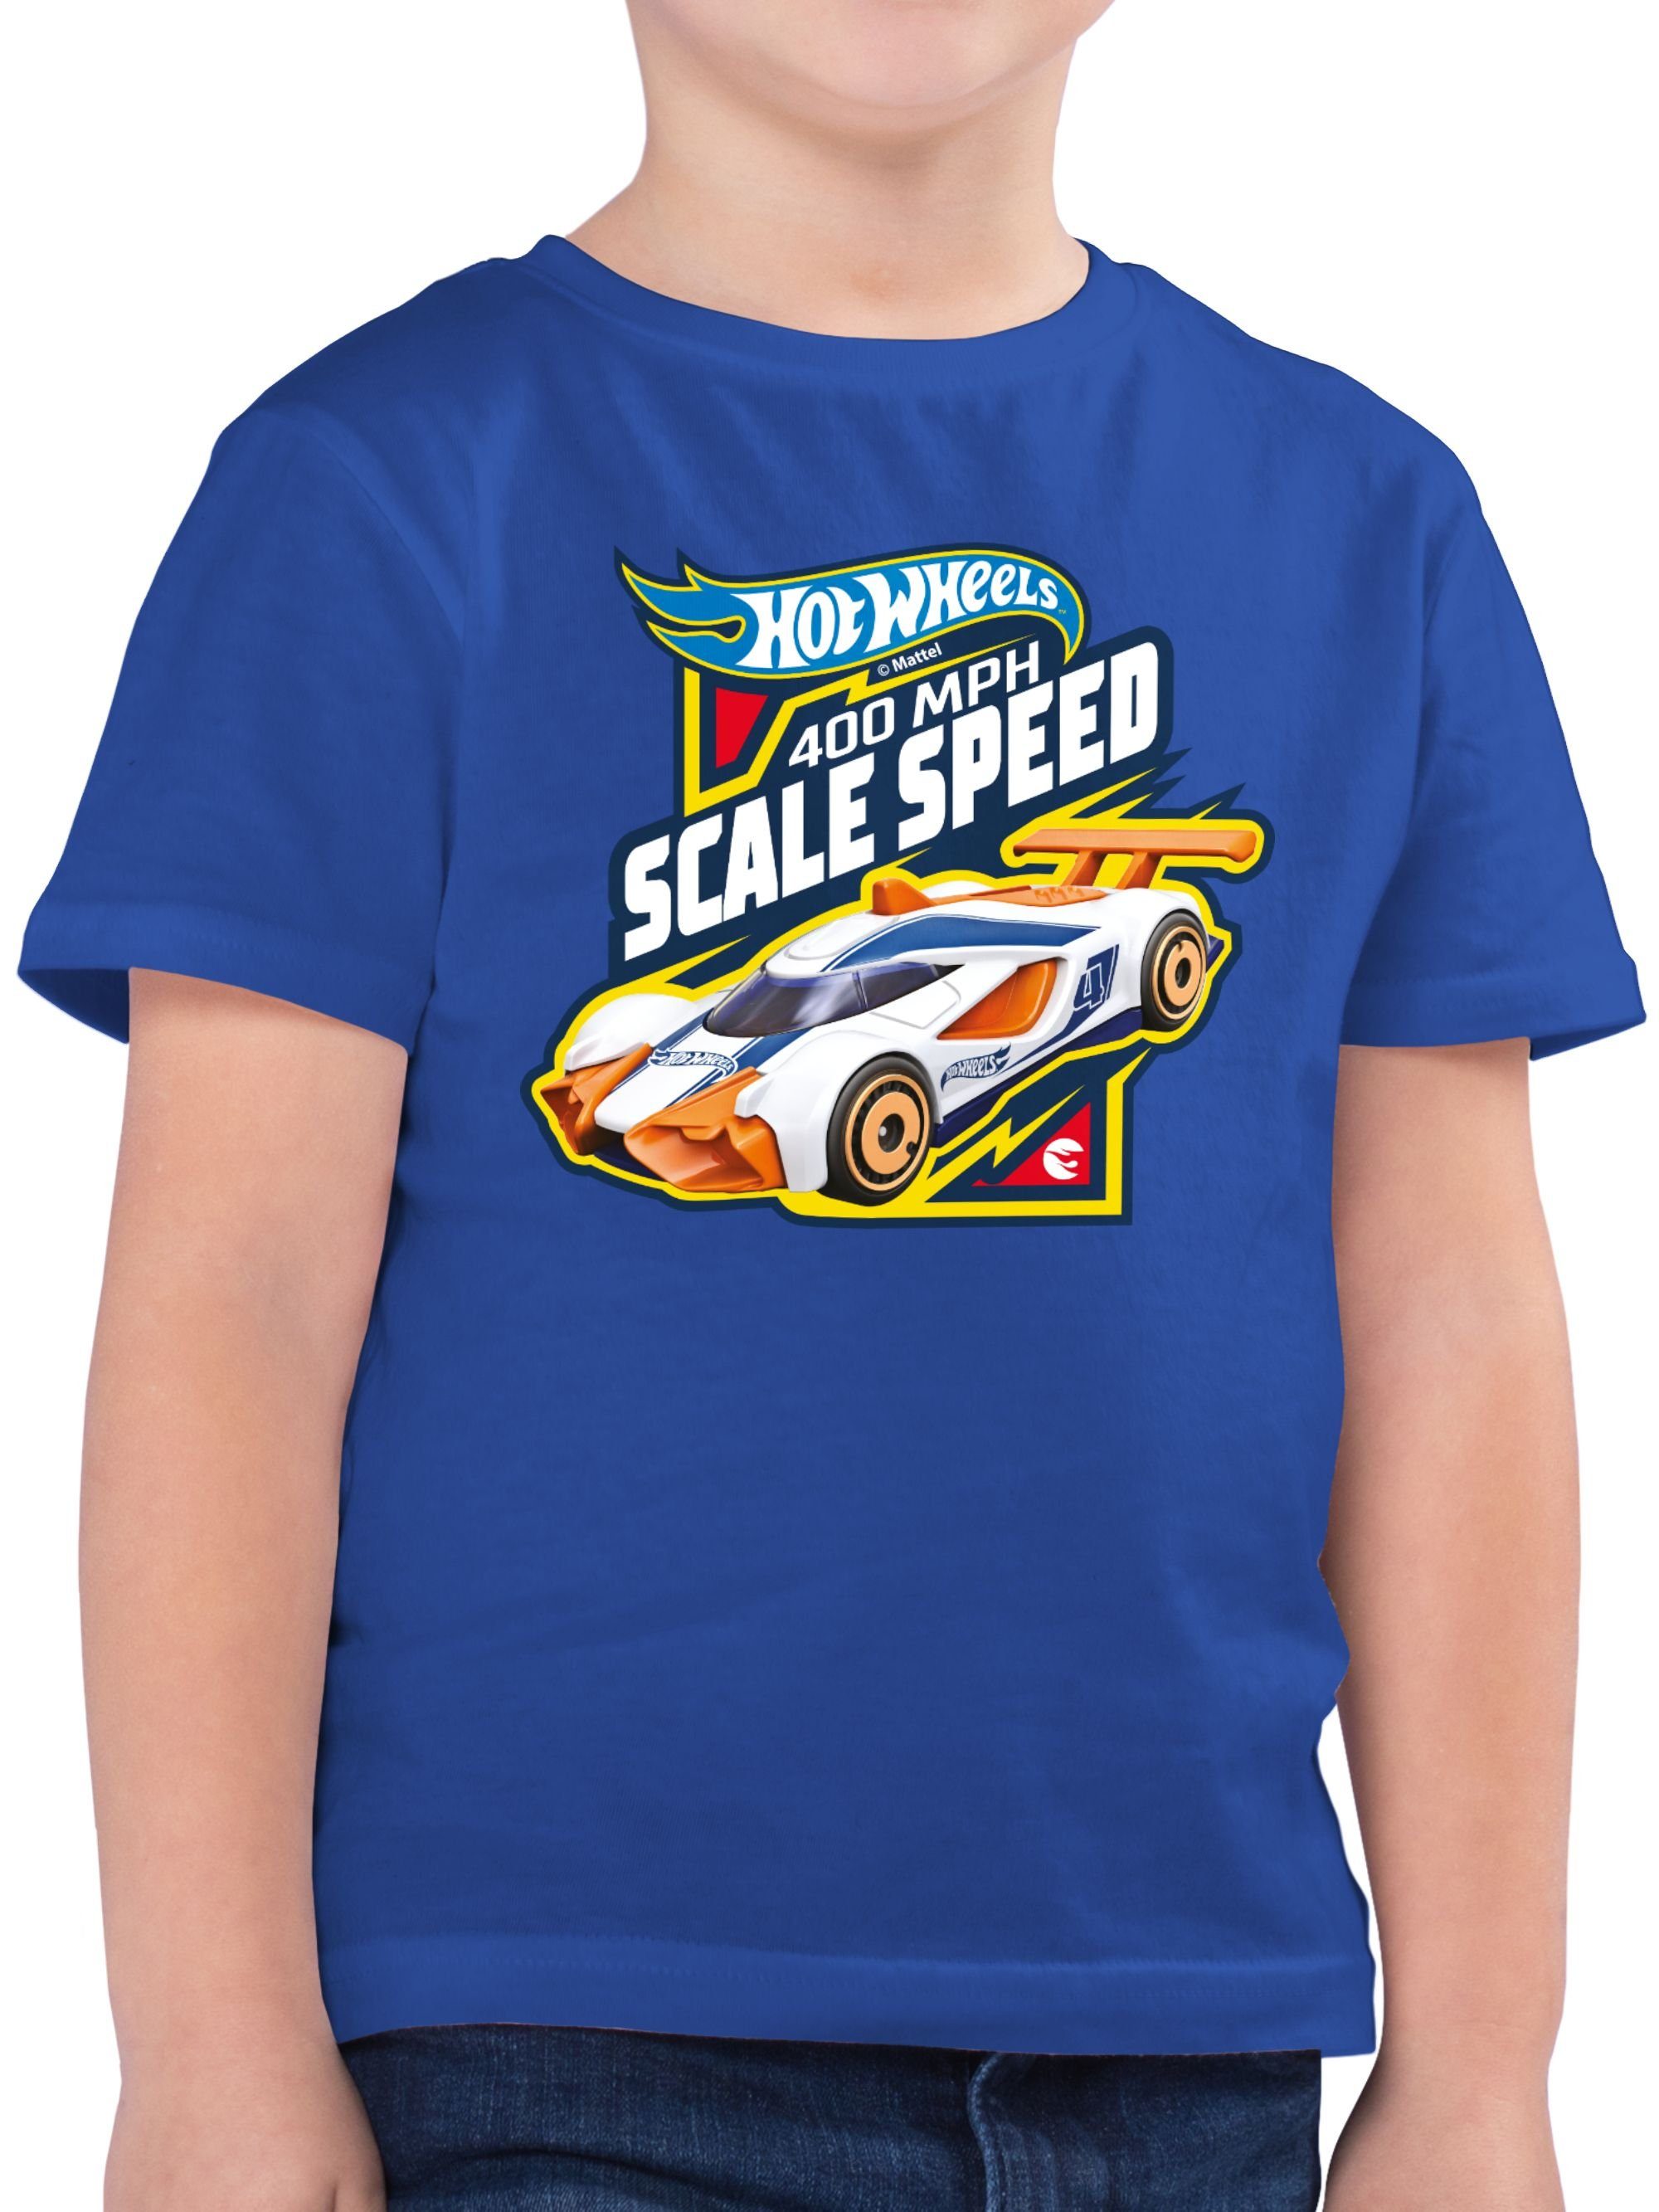 Shirtracer T-Shirt 400MPH Scale Speed Hot Wheels Jungen 03 Royalblau